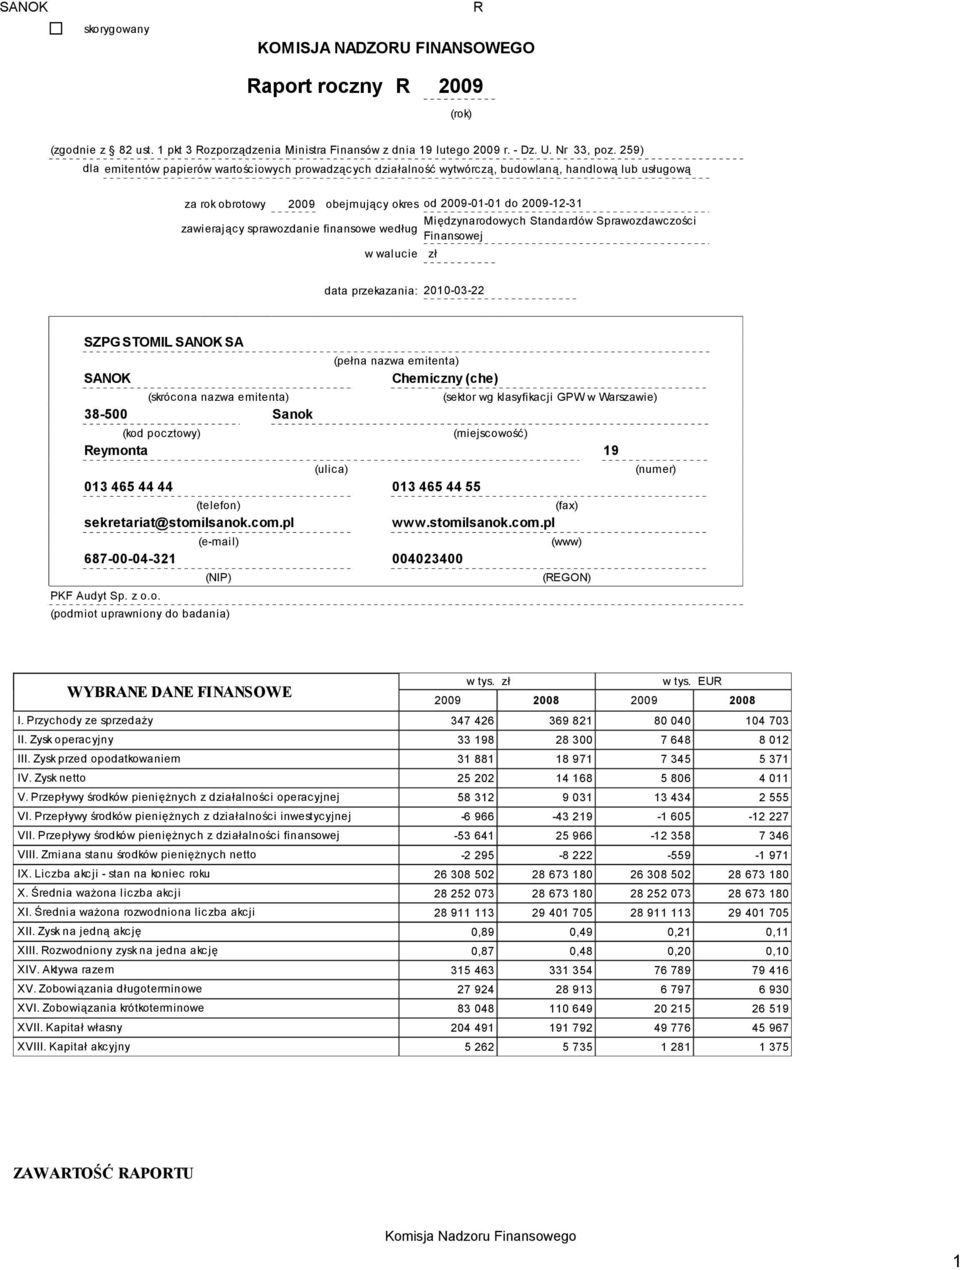 Standardów Sprawozdawczości zawierający sprawozdanie finansowe według Finansowej w walucie zł data przekazania: 2010-03-22 SZPG STOMIL SANOK SA SANOK (skrócona nazwa emitenta) 38-500 Sanok (pełna